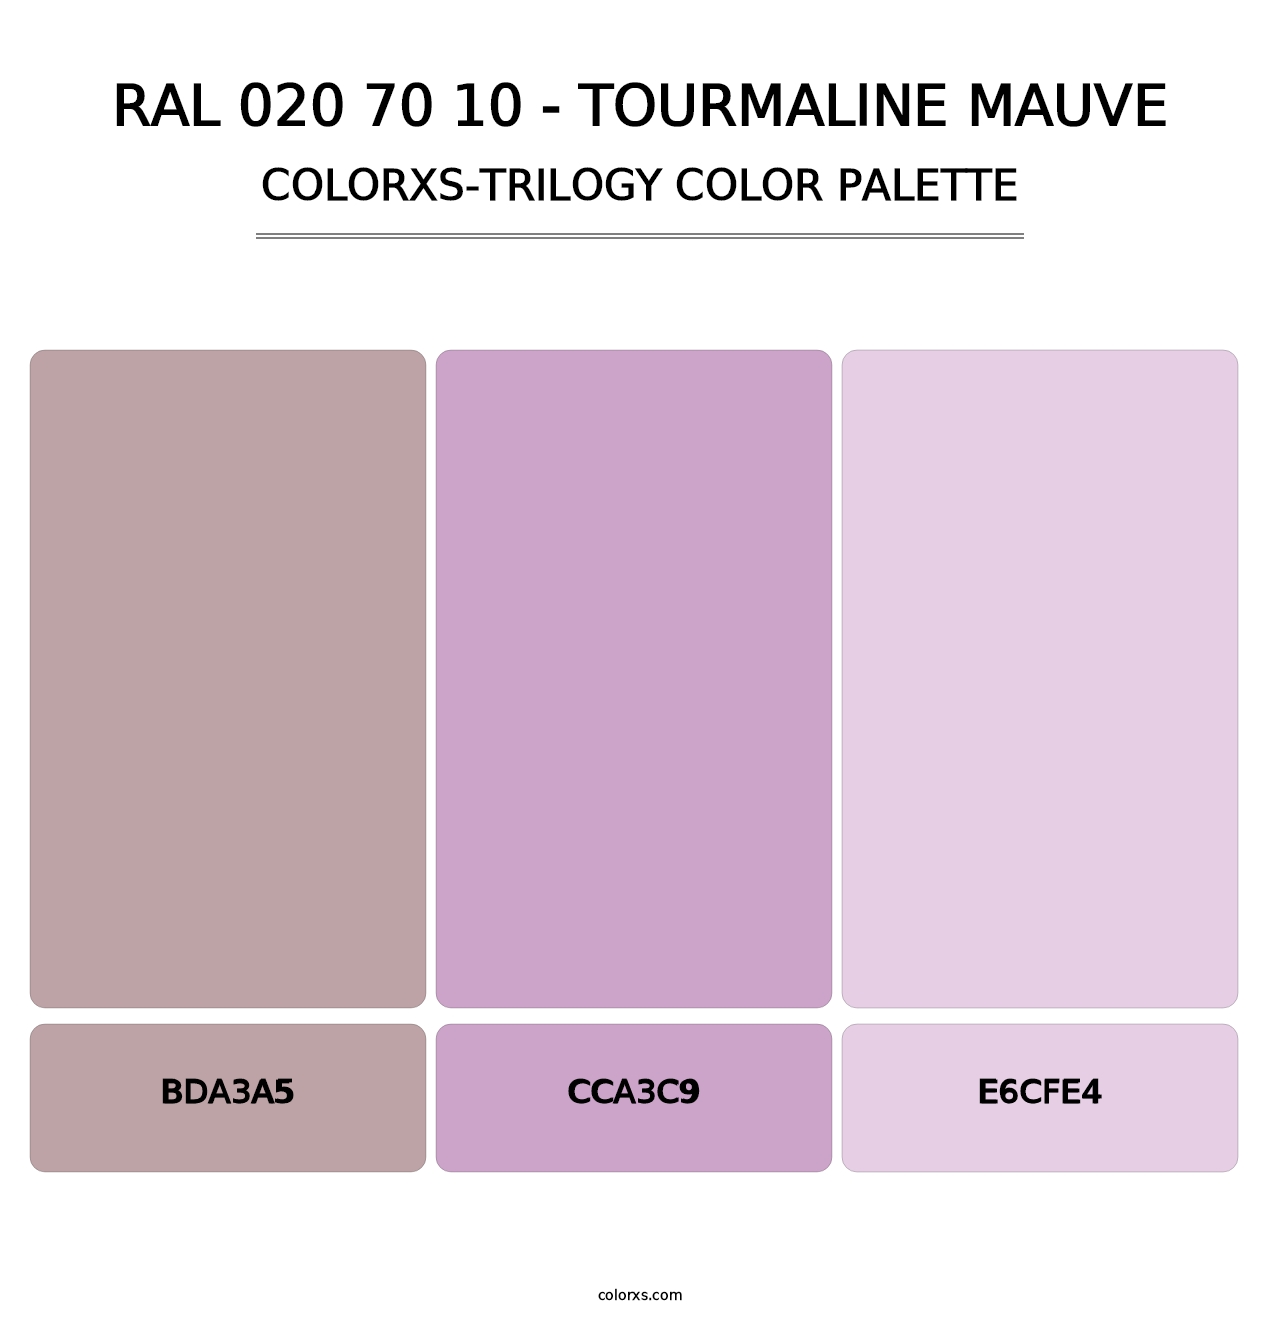 RAL 020 70 10 - Tourmaline Mauve - Colorxs Trilogy Palette